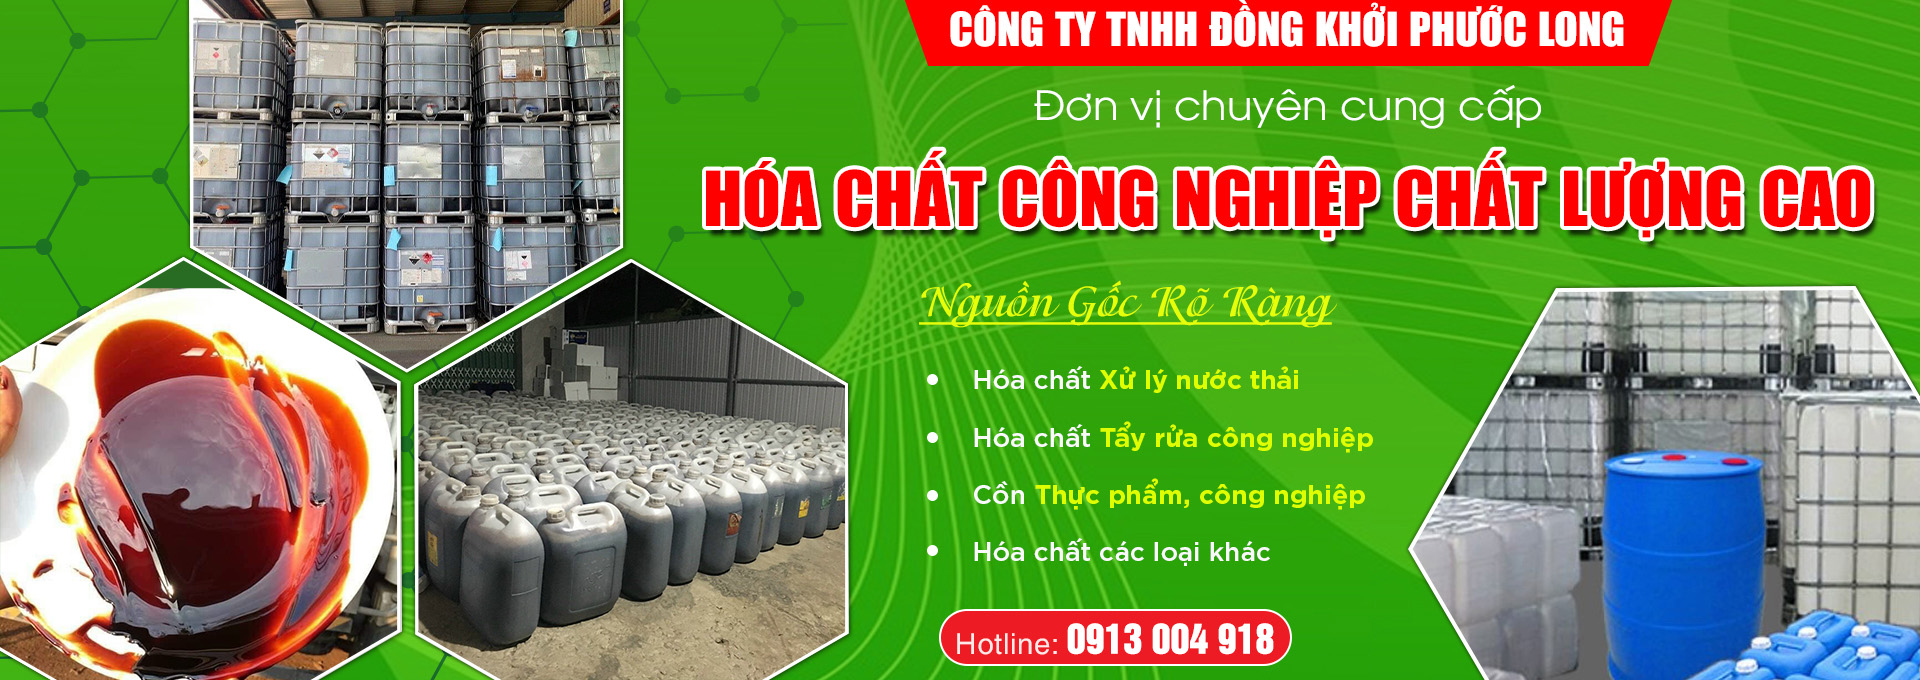 Công Ty TNHH Đồng Khởi Phước Long